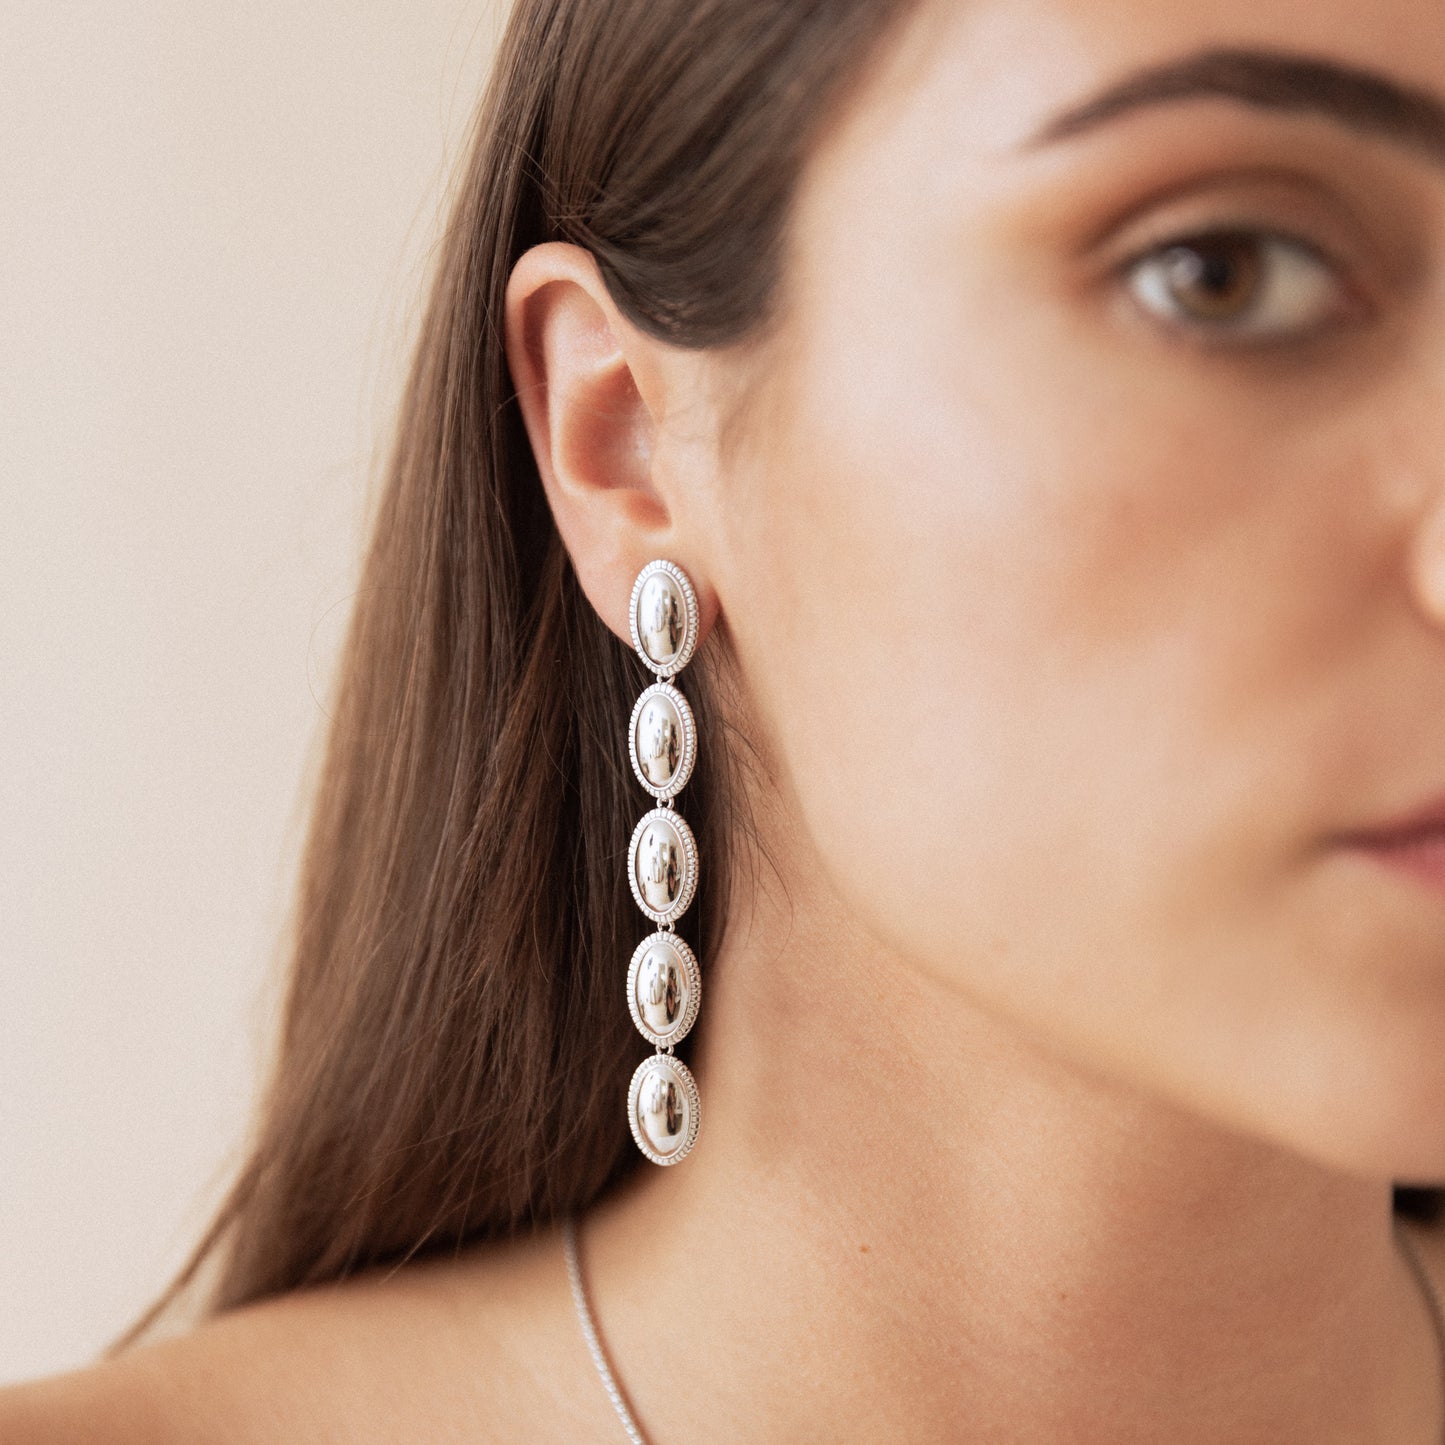 Penelope earrings